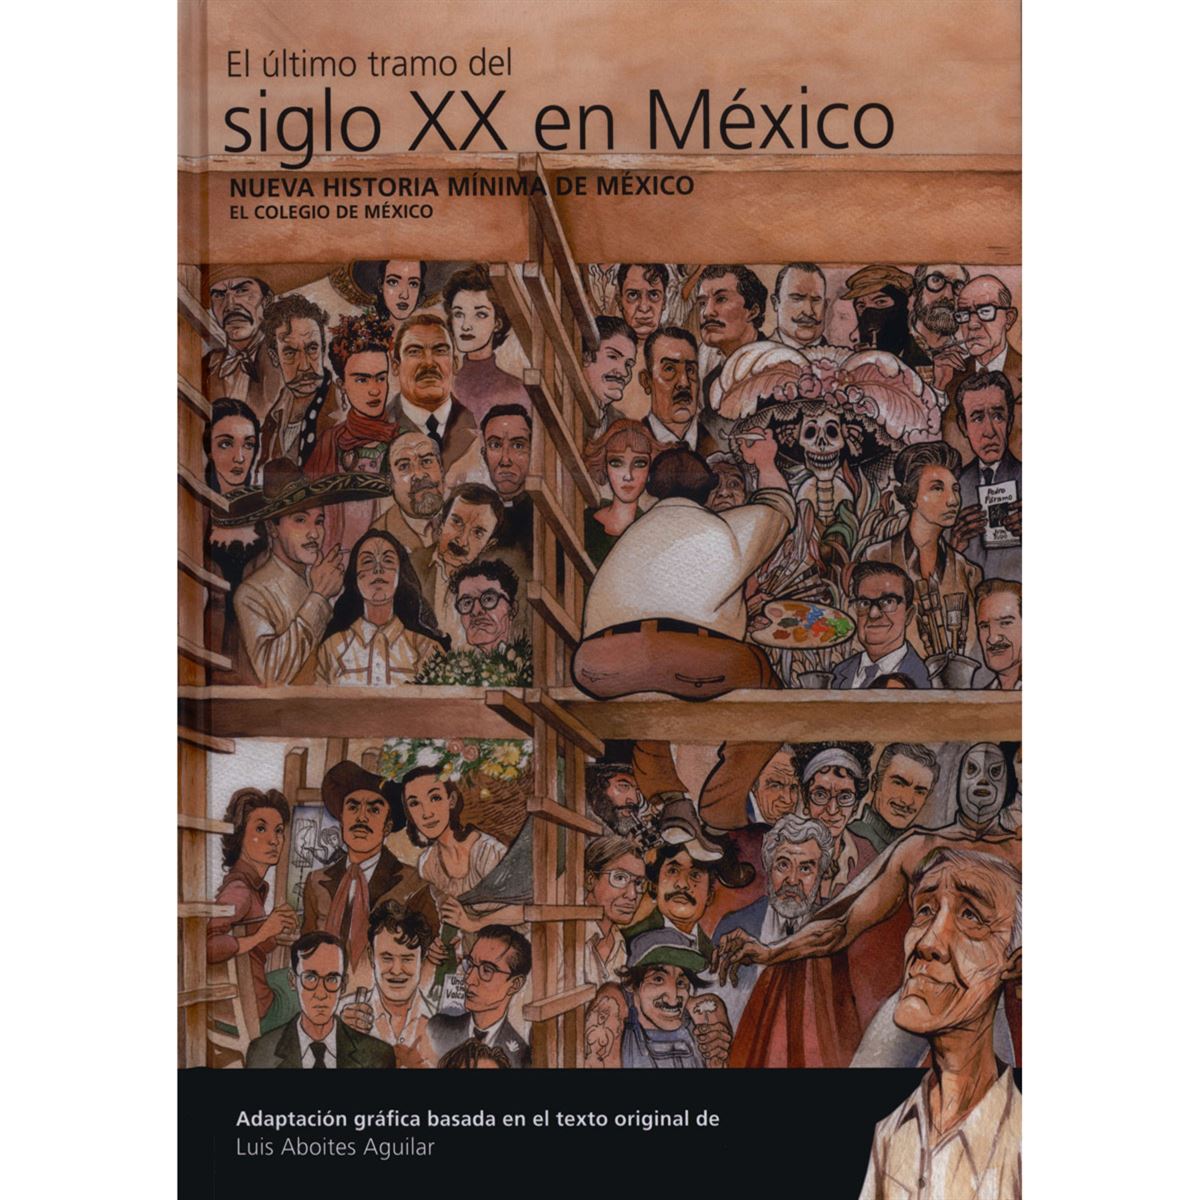 Nueva historia mínima de México. El último tramo del siglo XX en México